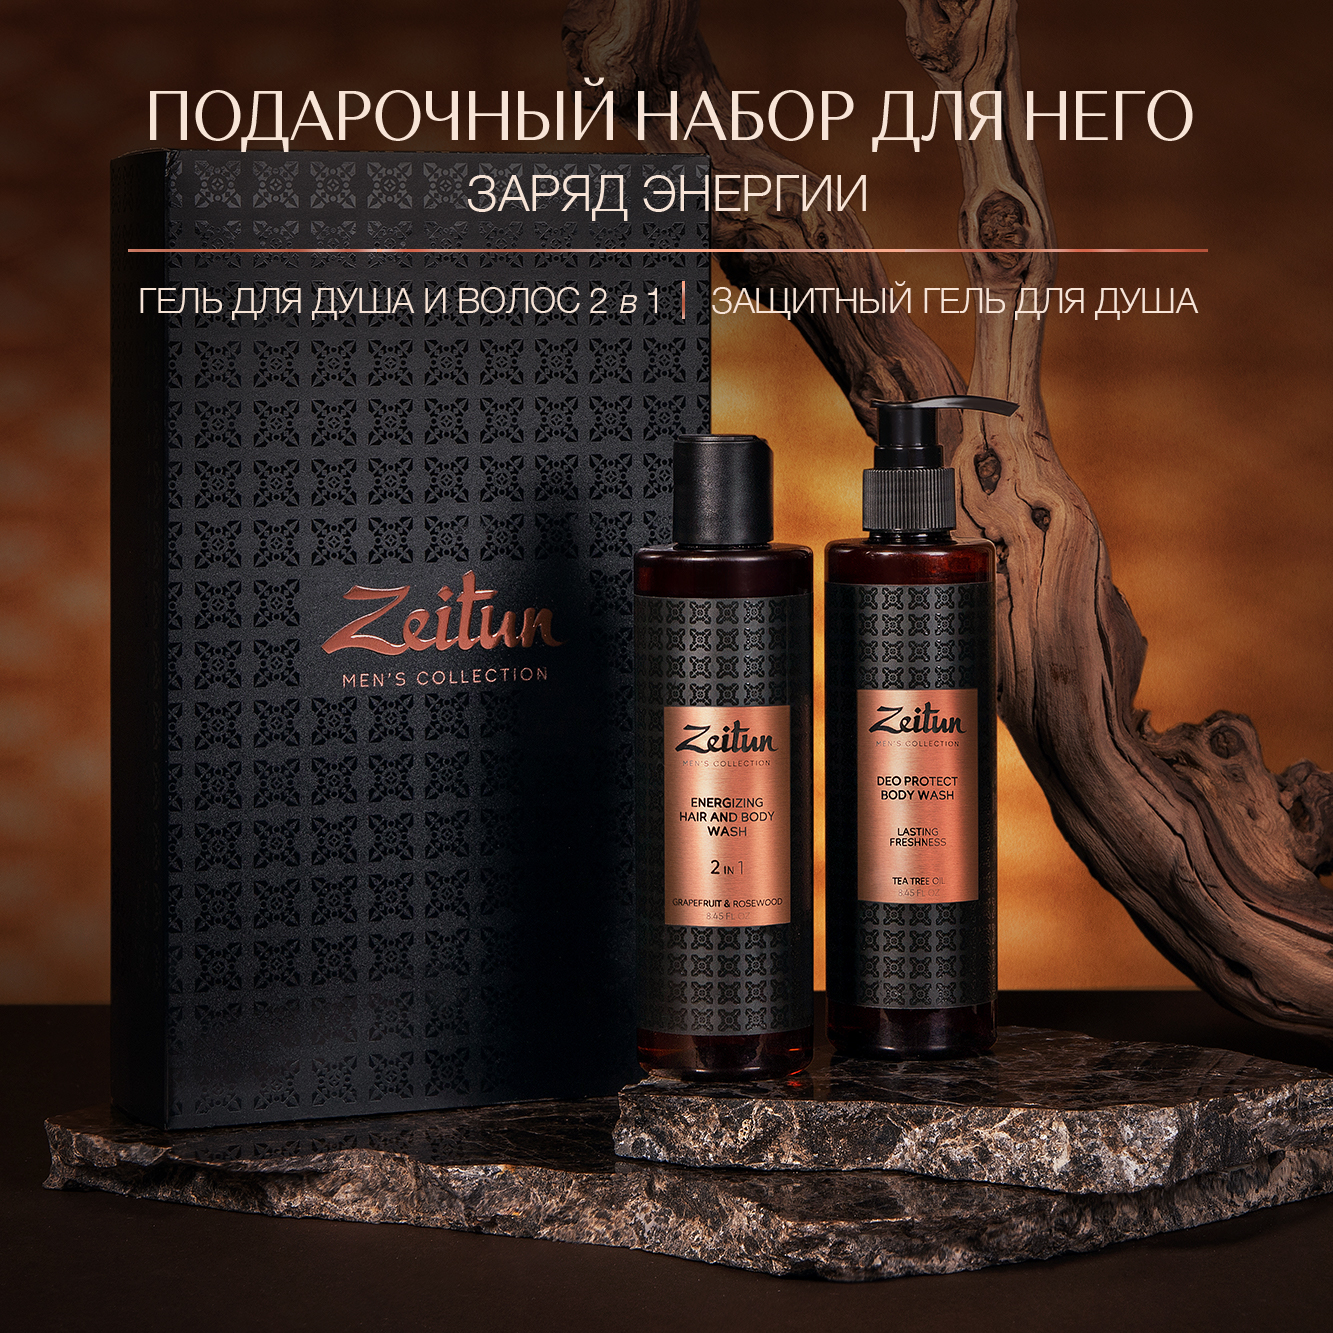 Подарочный набор для мужчин Zeitun косметический бьюти бокс для волос и тела папа